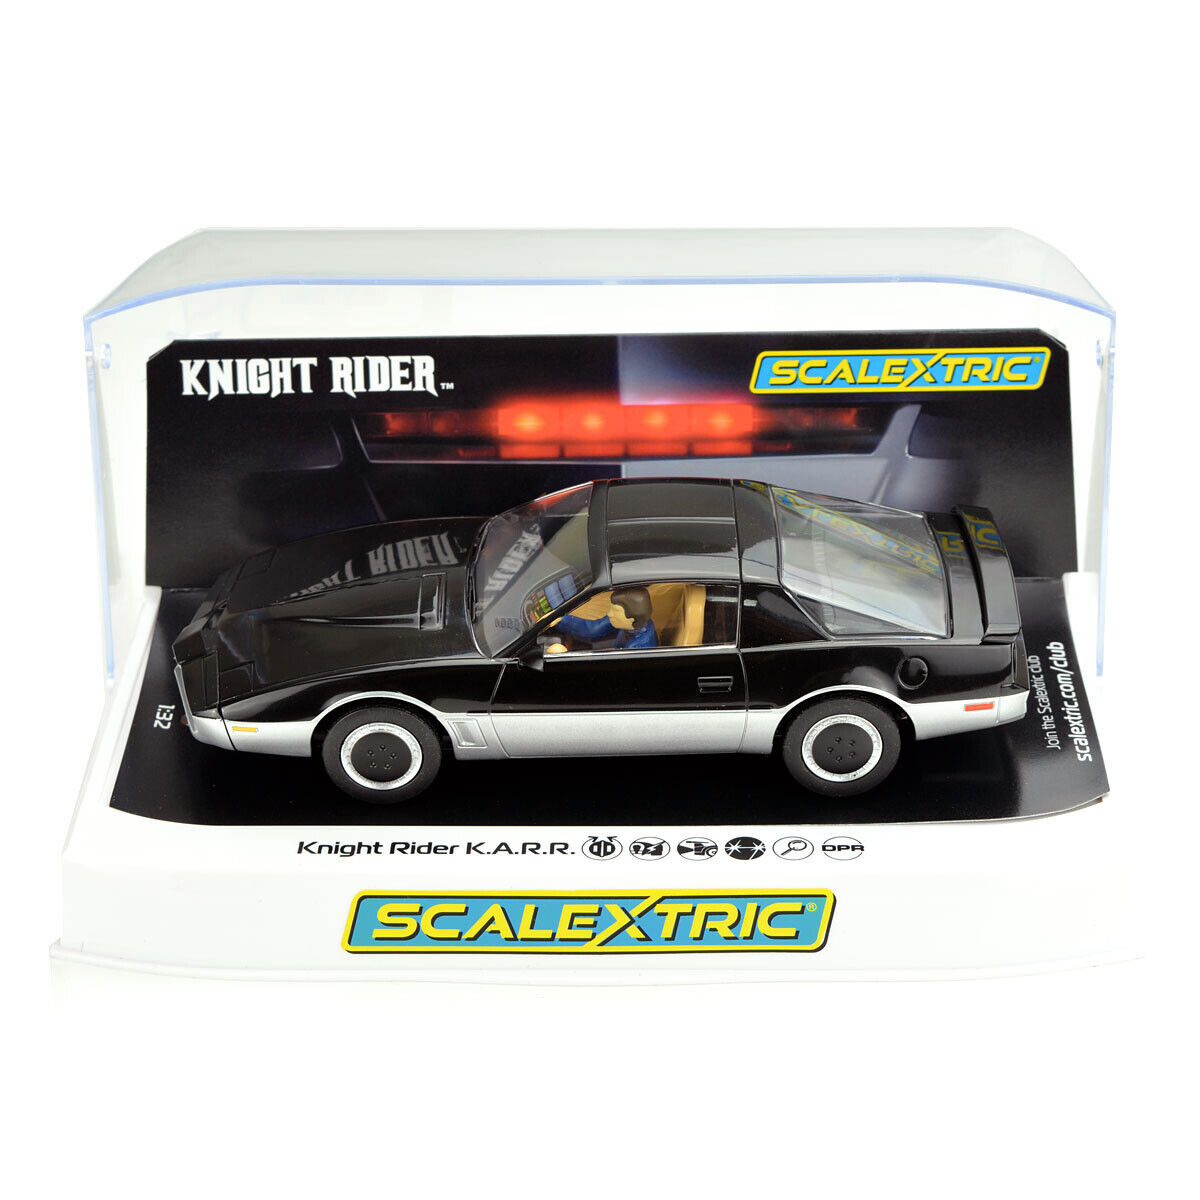 Scalextric Knight Rider K.A.R.R. Slot Car